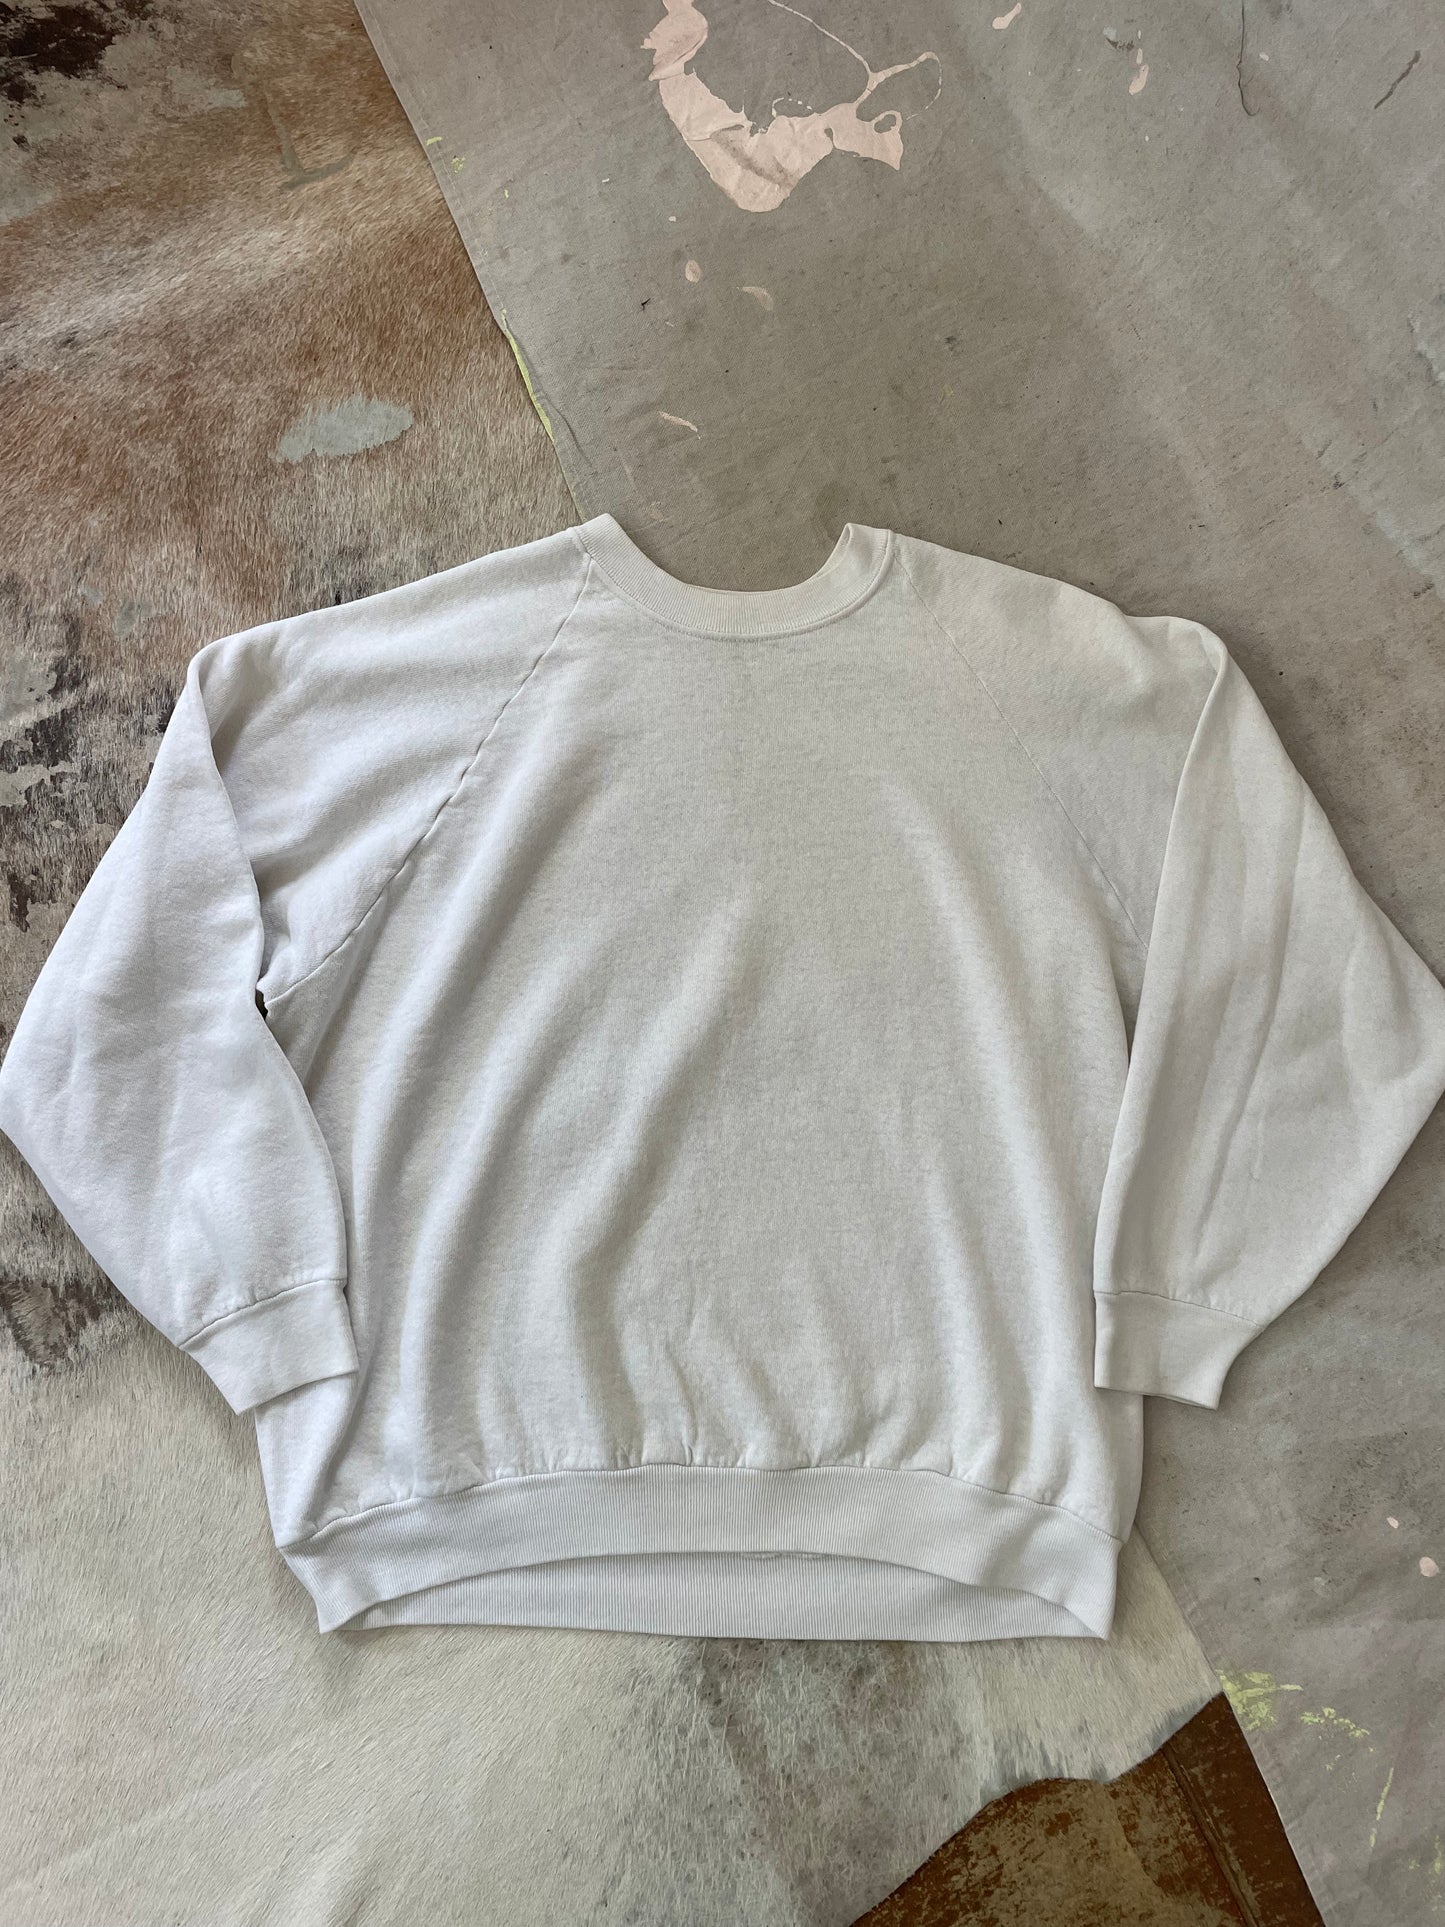 80s/90s Blank White Sweatshirt